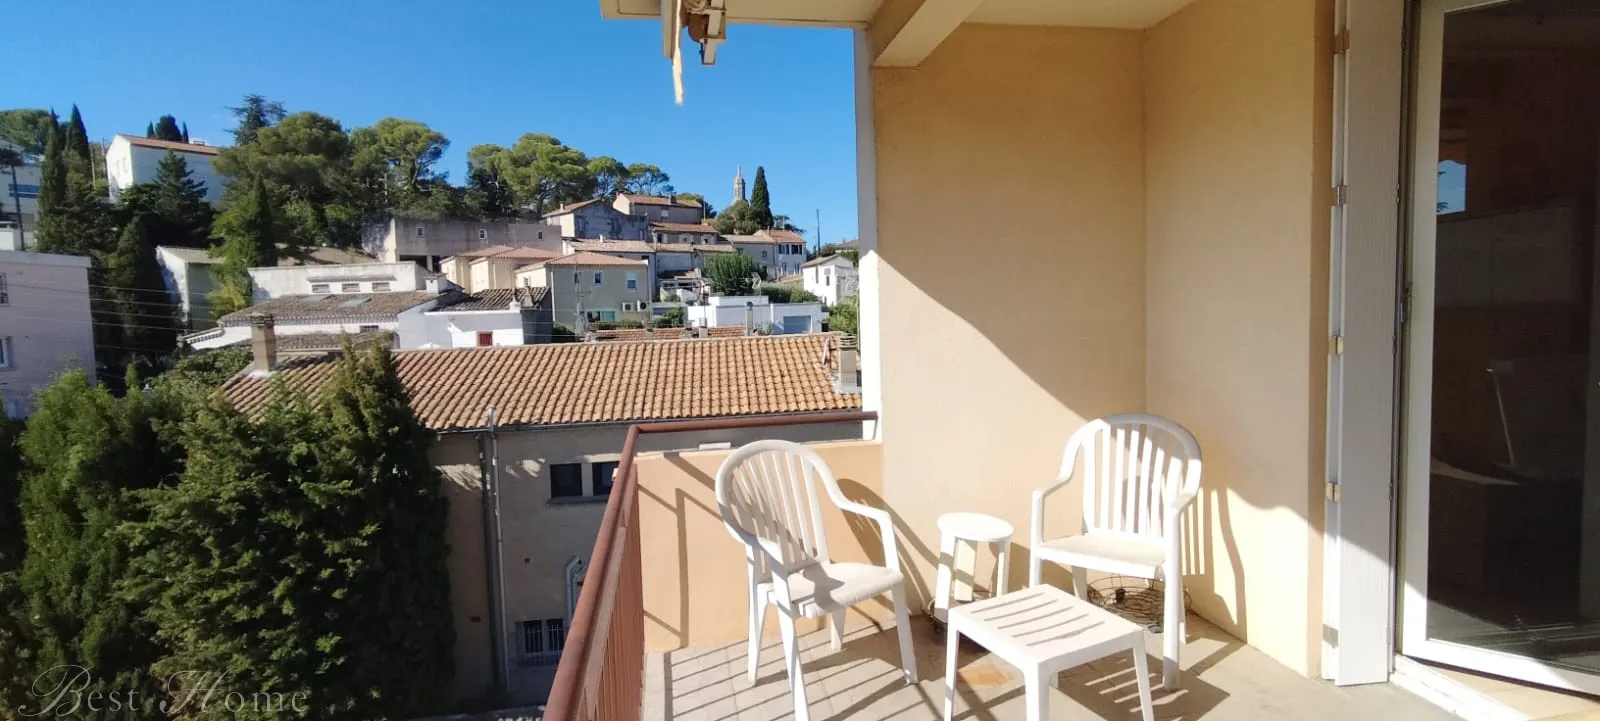 Vente EXCLUSIVITE appartement Quartier Croix de fer à Nîmes de type 3 avec terrasse, loggia et Cave 